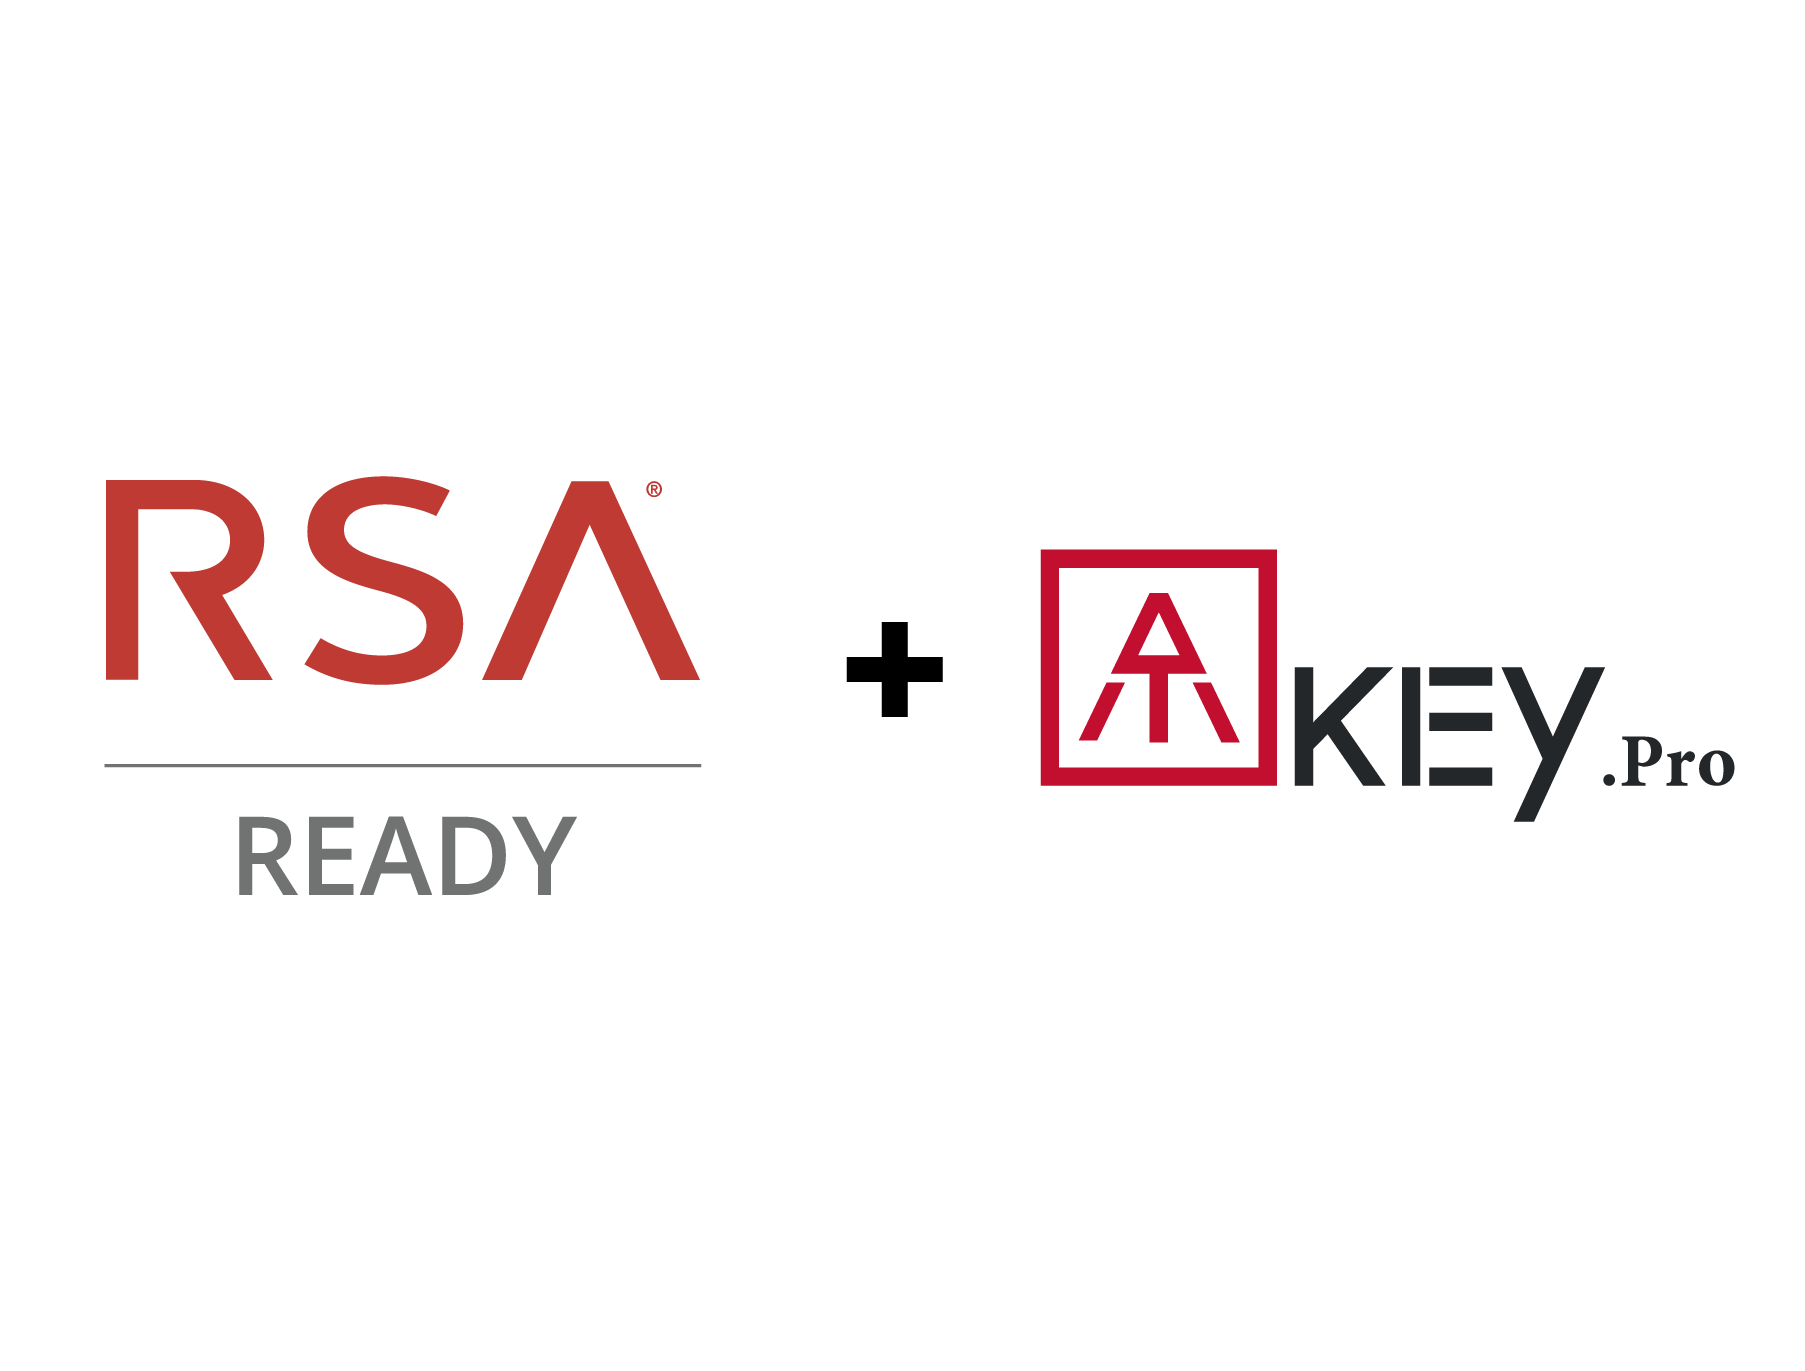 ATKey Pro RSA Ready